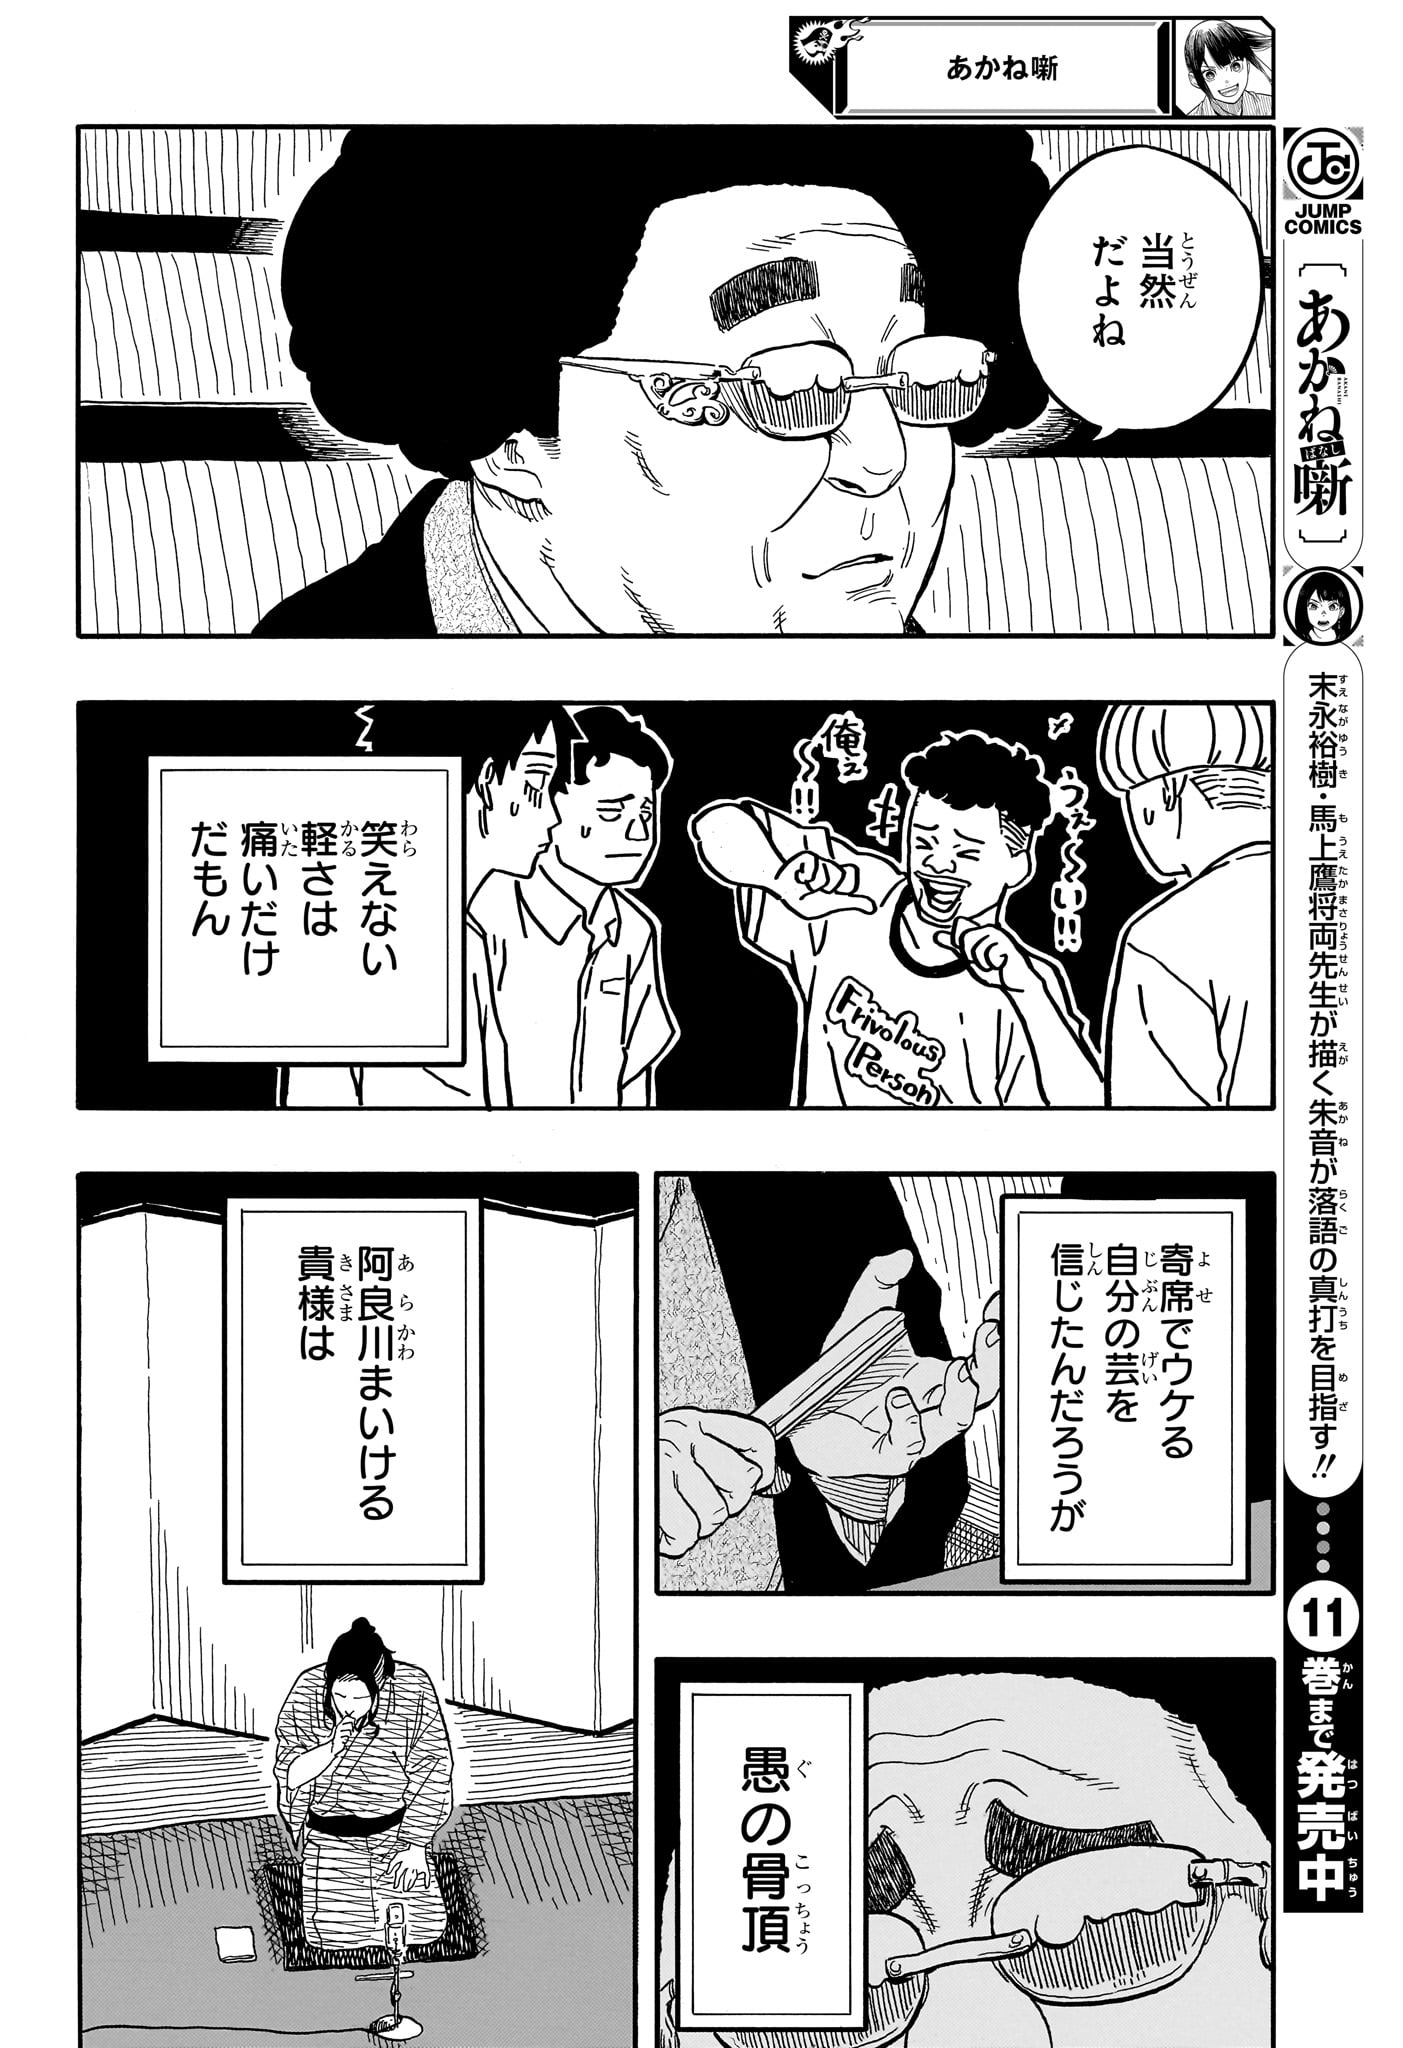 Akane-Banashi - Chapter 112 - Page 10